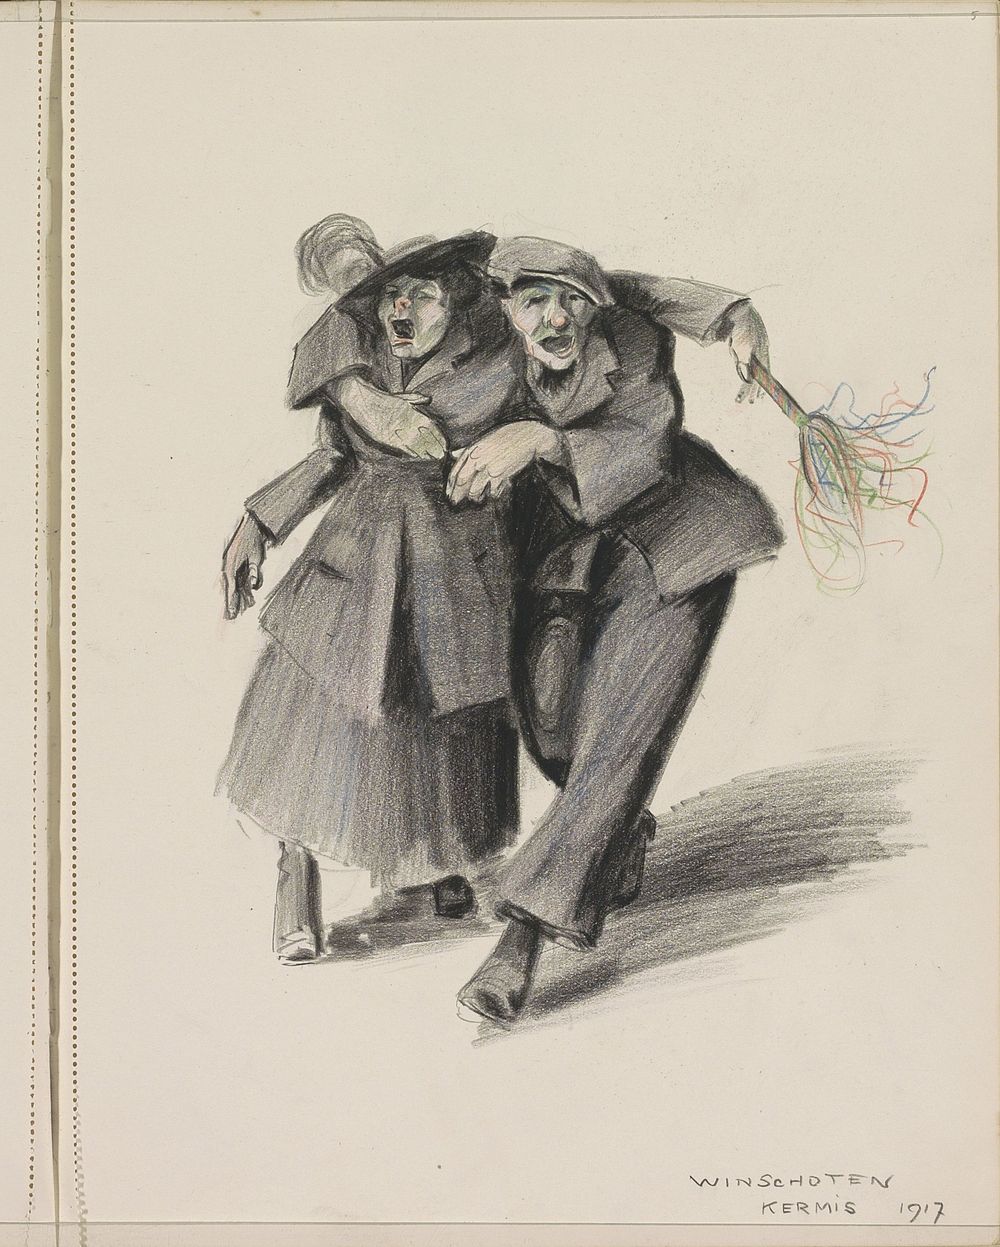 Dronken paar op de Kermis van Winschoten (1917) by Otto Verhagen I